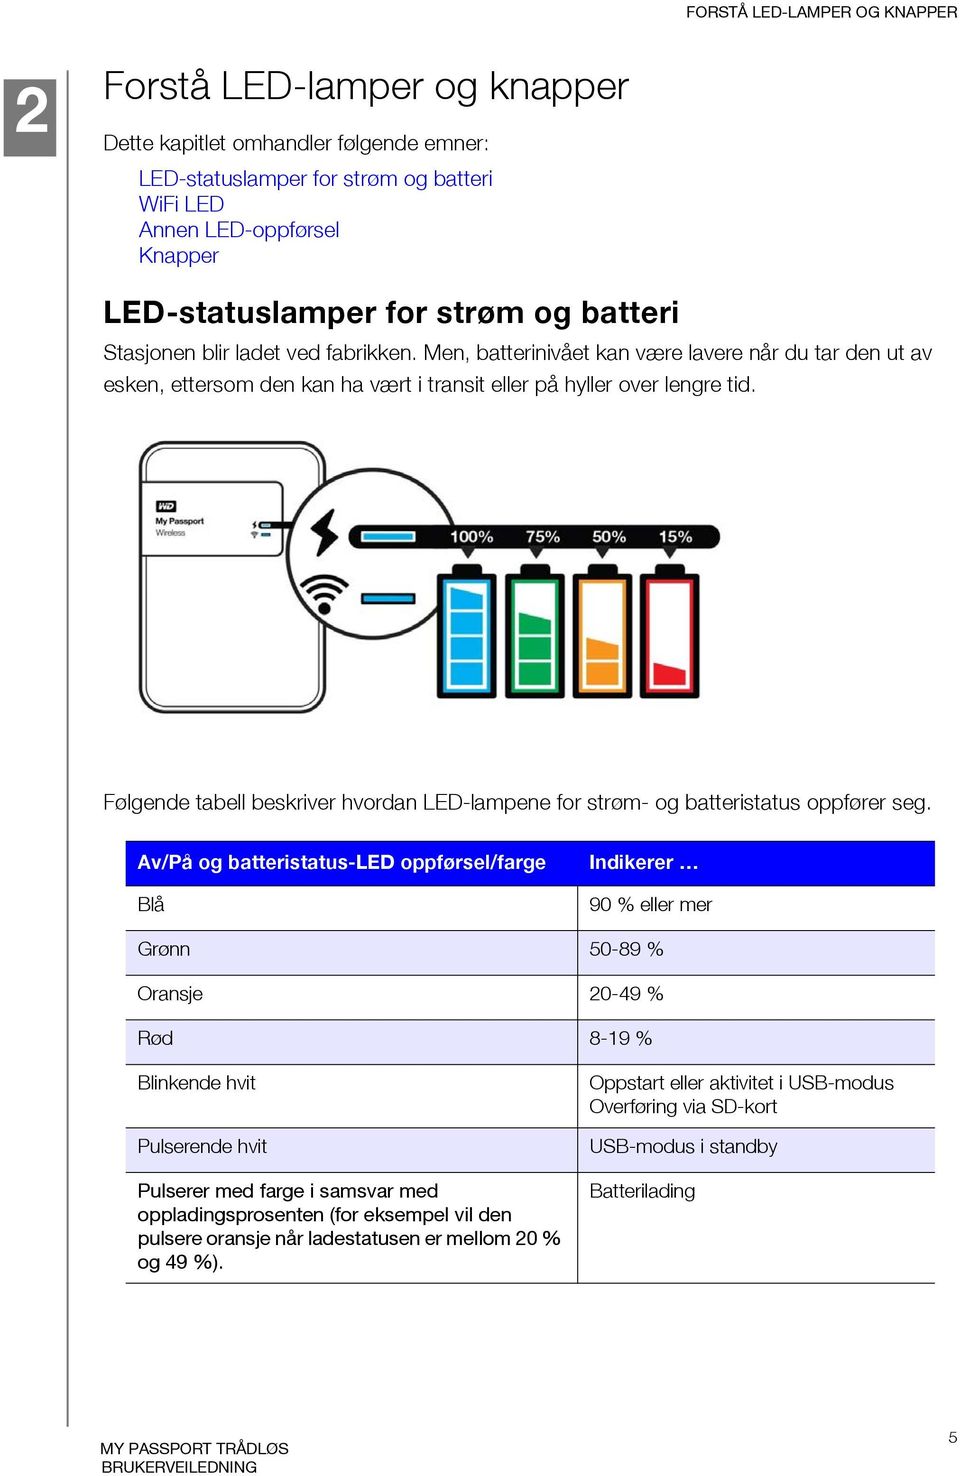 Følgende tabell beskriver hvordan LED-lampene for strøm- og batteristatus oppfører seg.